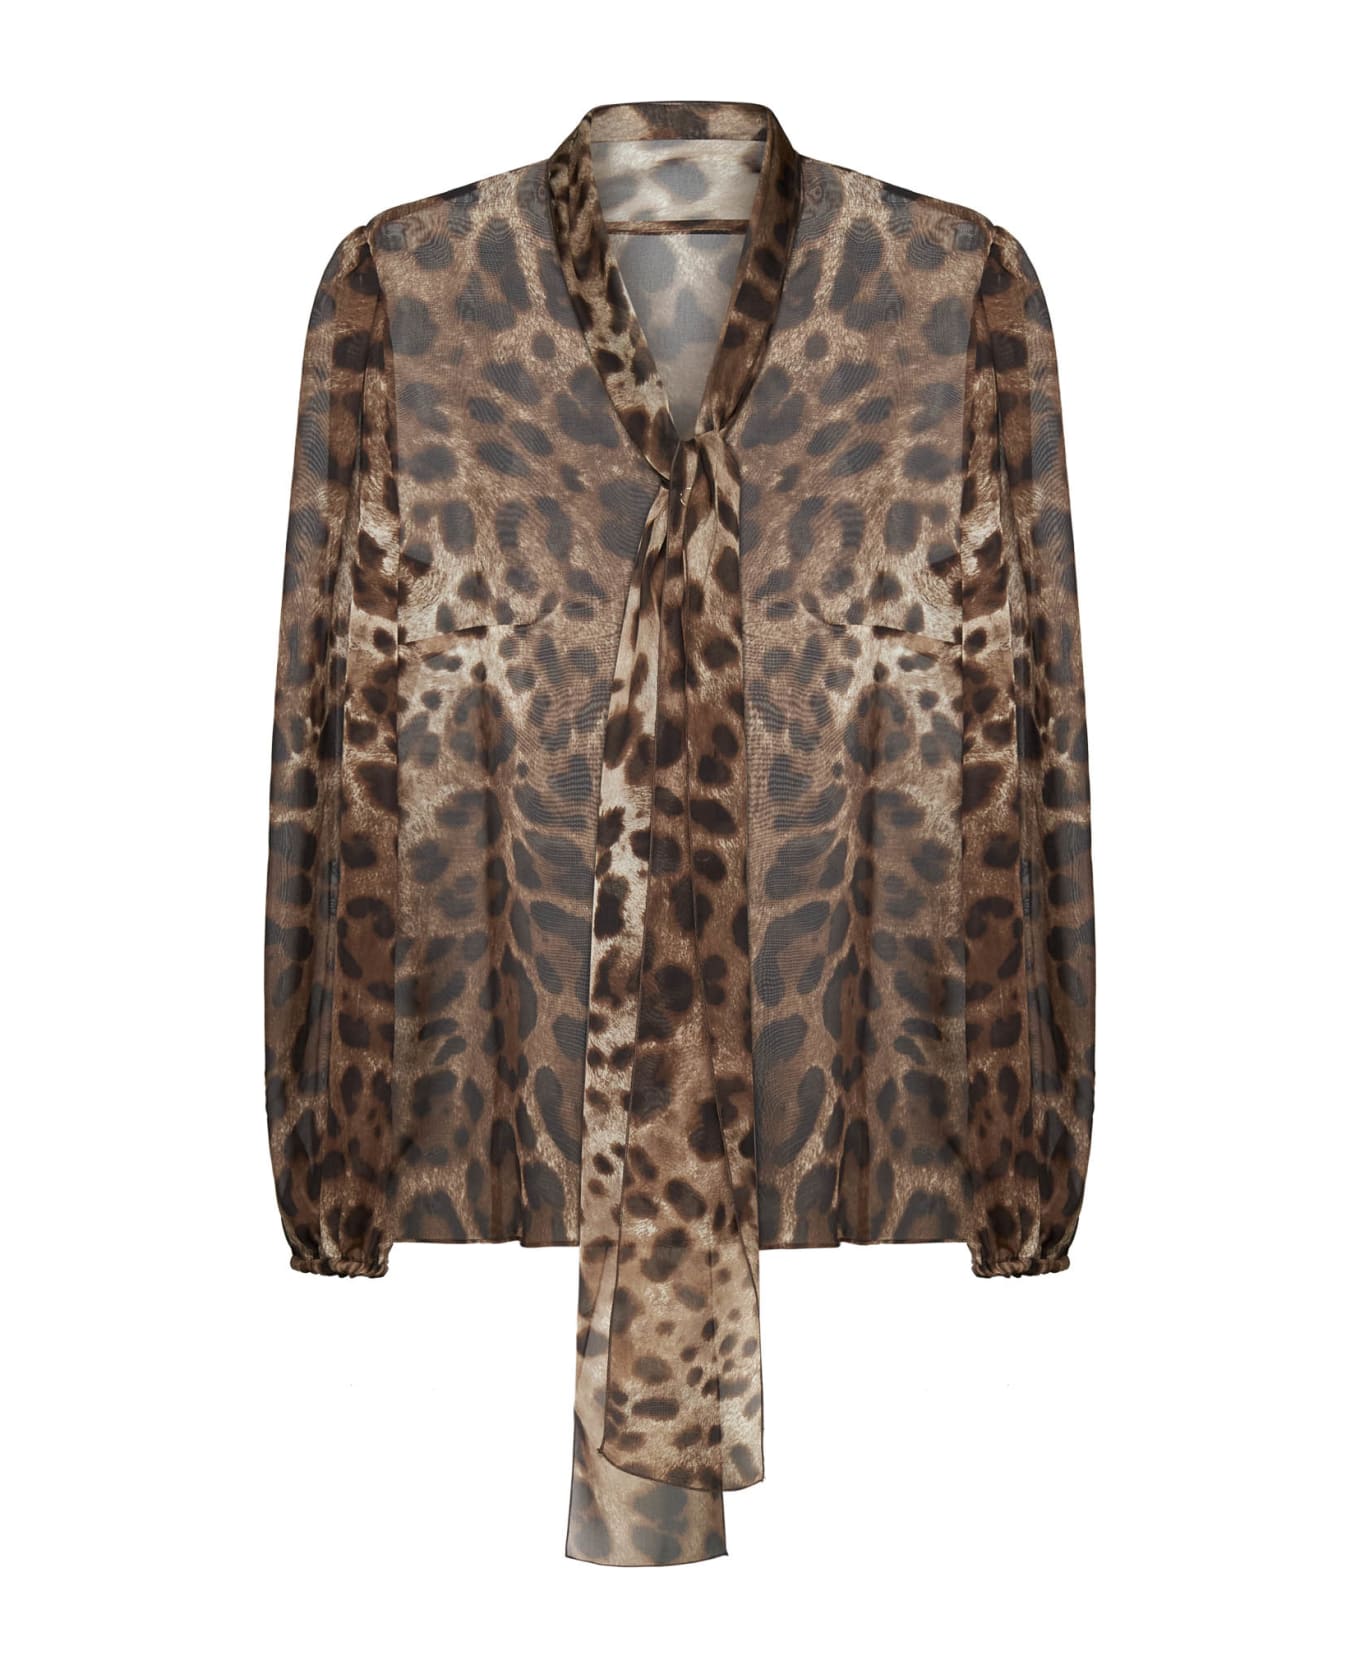 Dolce & Gabbana Leopard Print Chiffon Shirt - Animalier